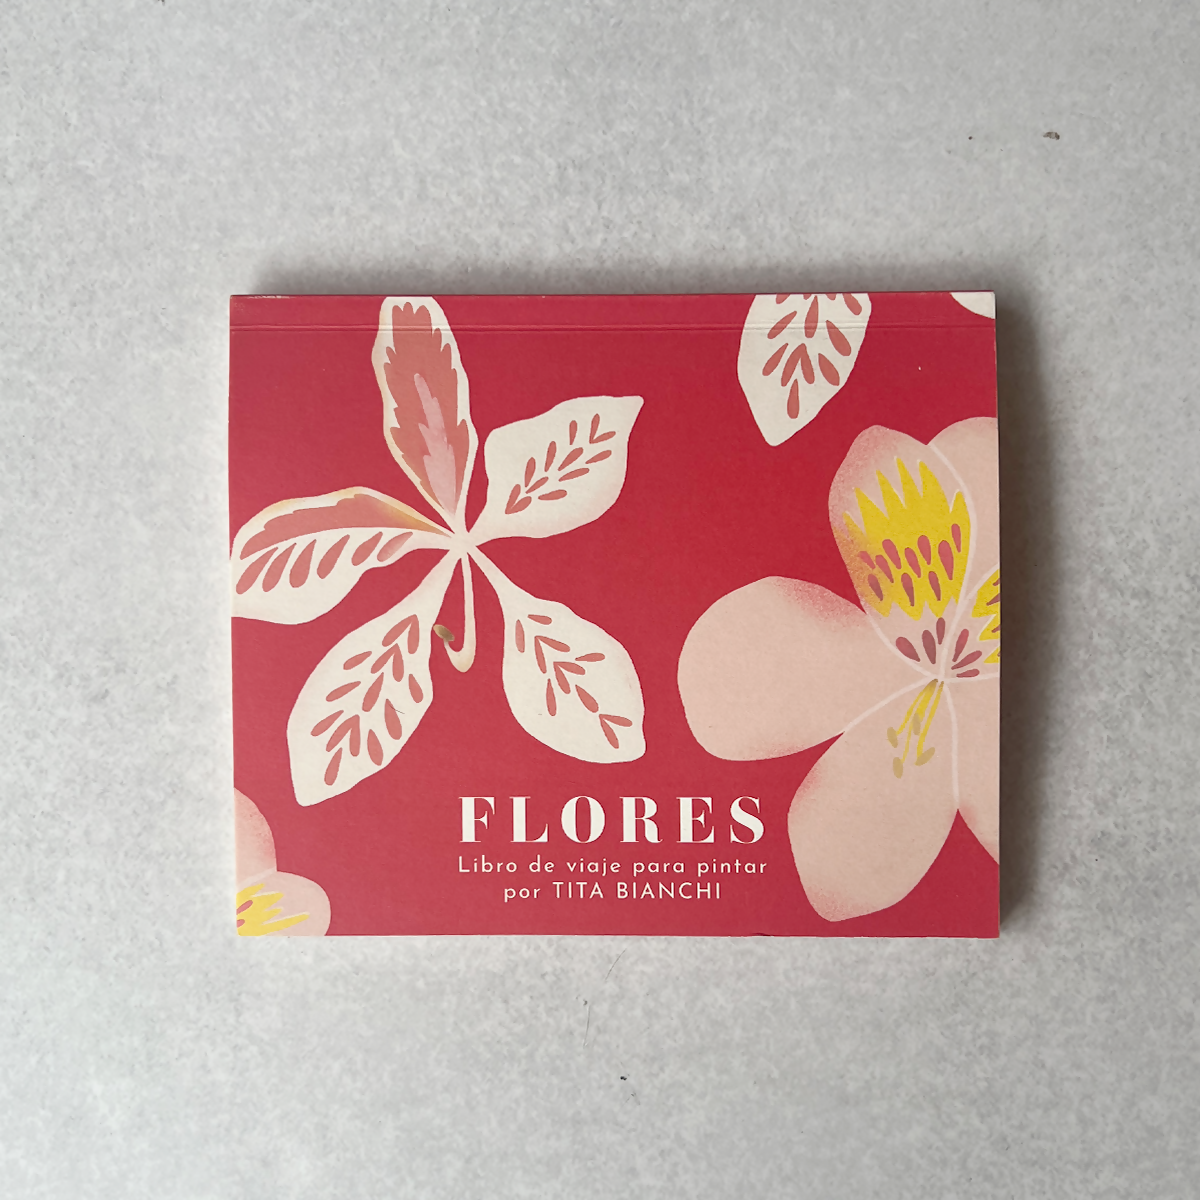 Libro para colorear Flores